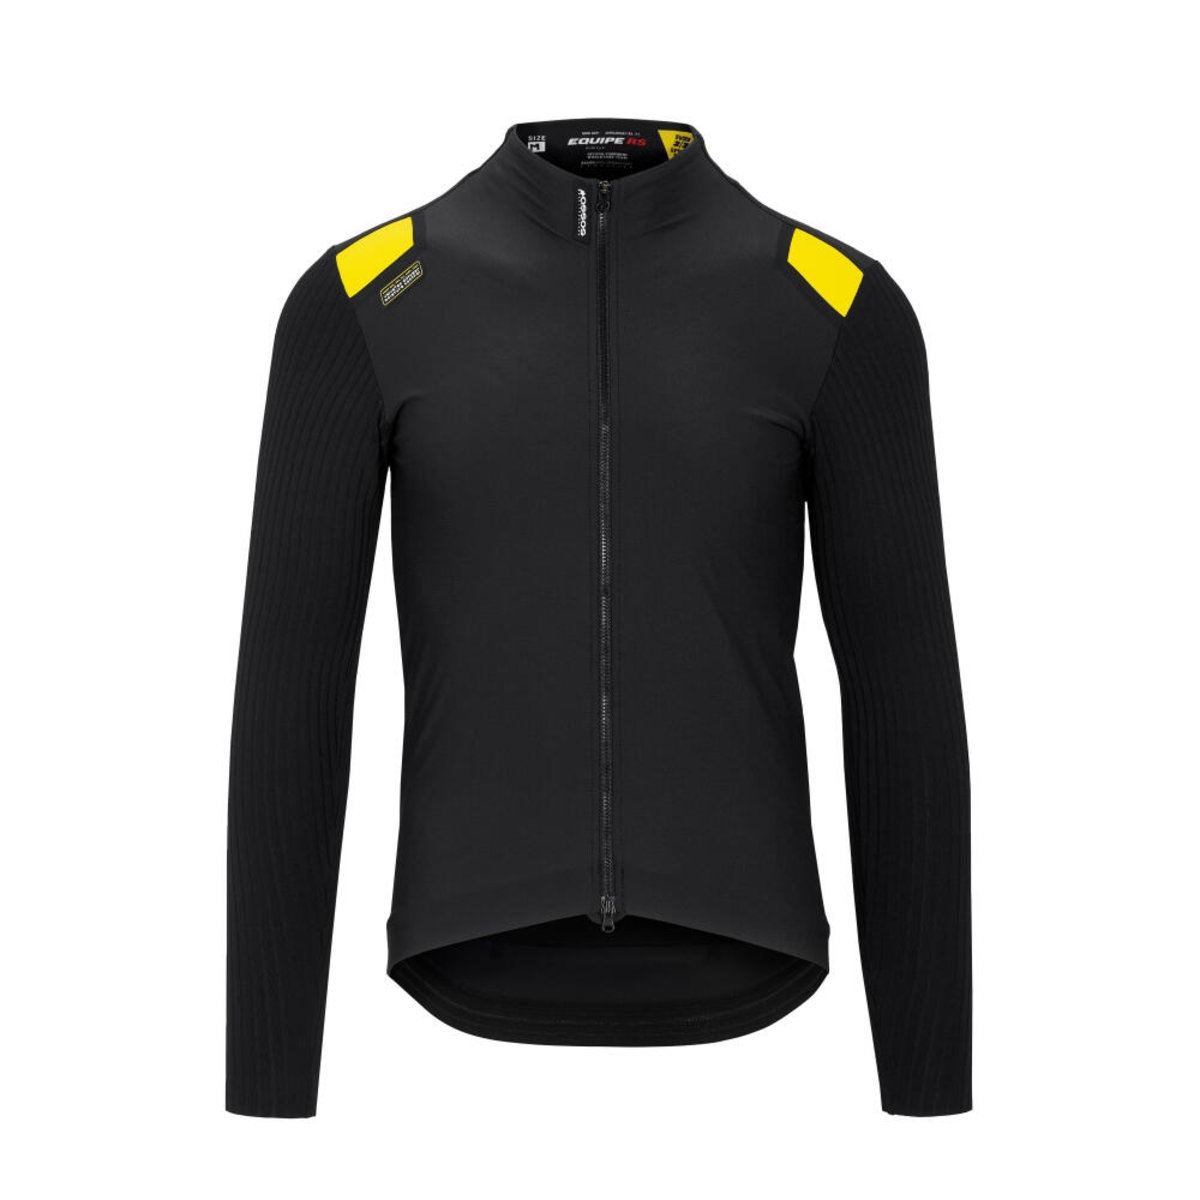 Куртка ASSOS Equipe RS Spring Fall Jacket, длин. рукав, мужская, черная с желтым, M